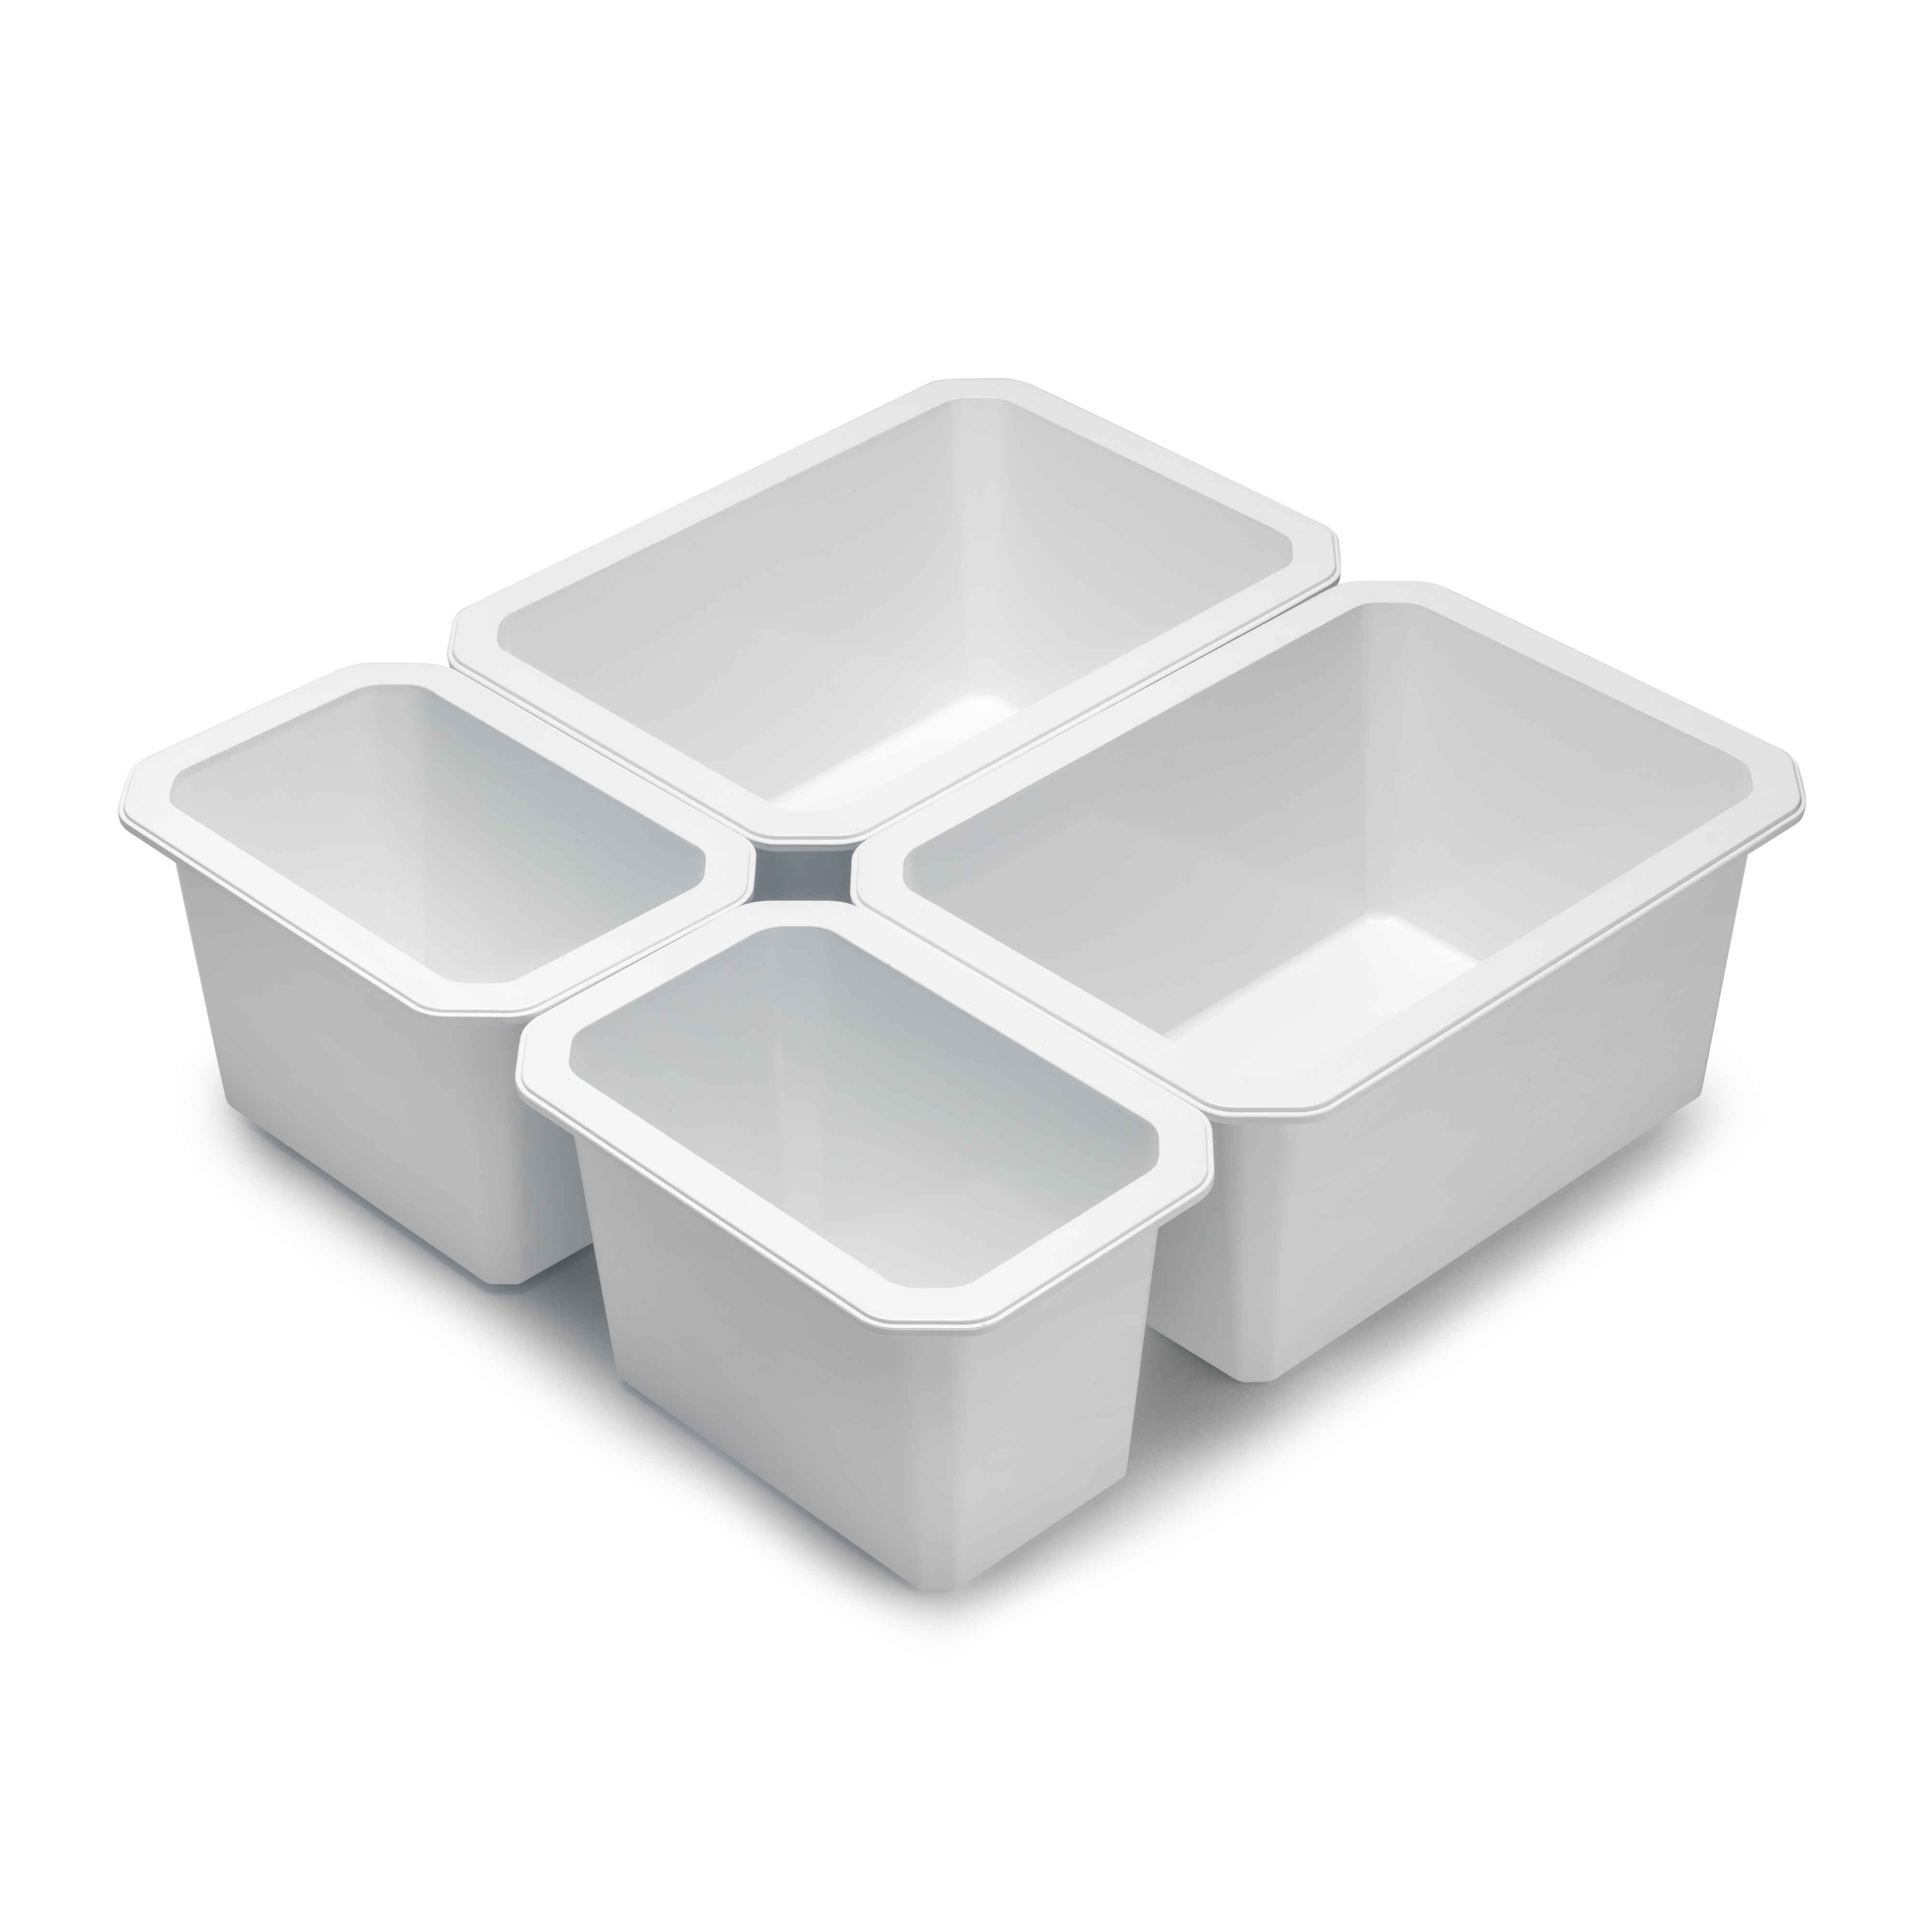 Cubos organizadores para cajón de baño Tidy, Plástico blanco, Plástico, 4 cubes